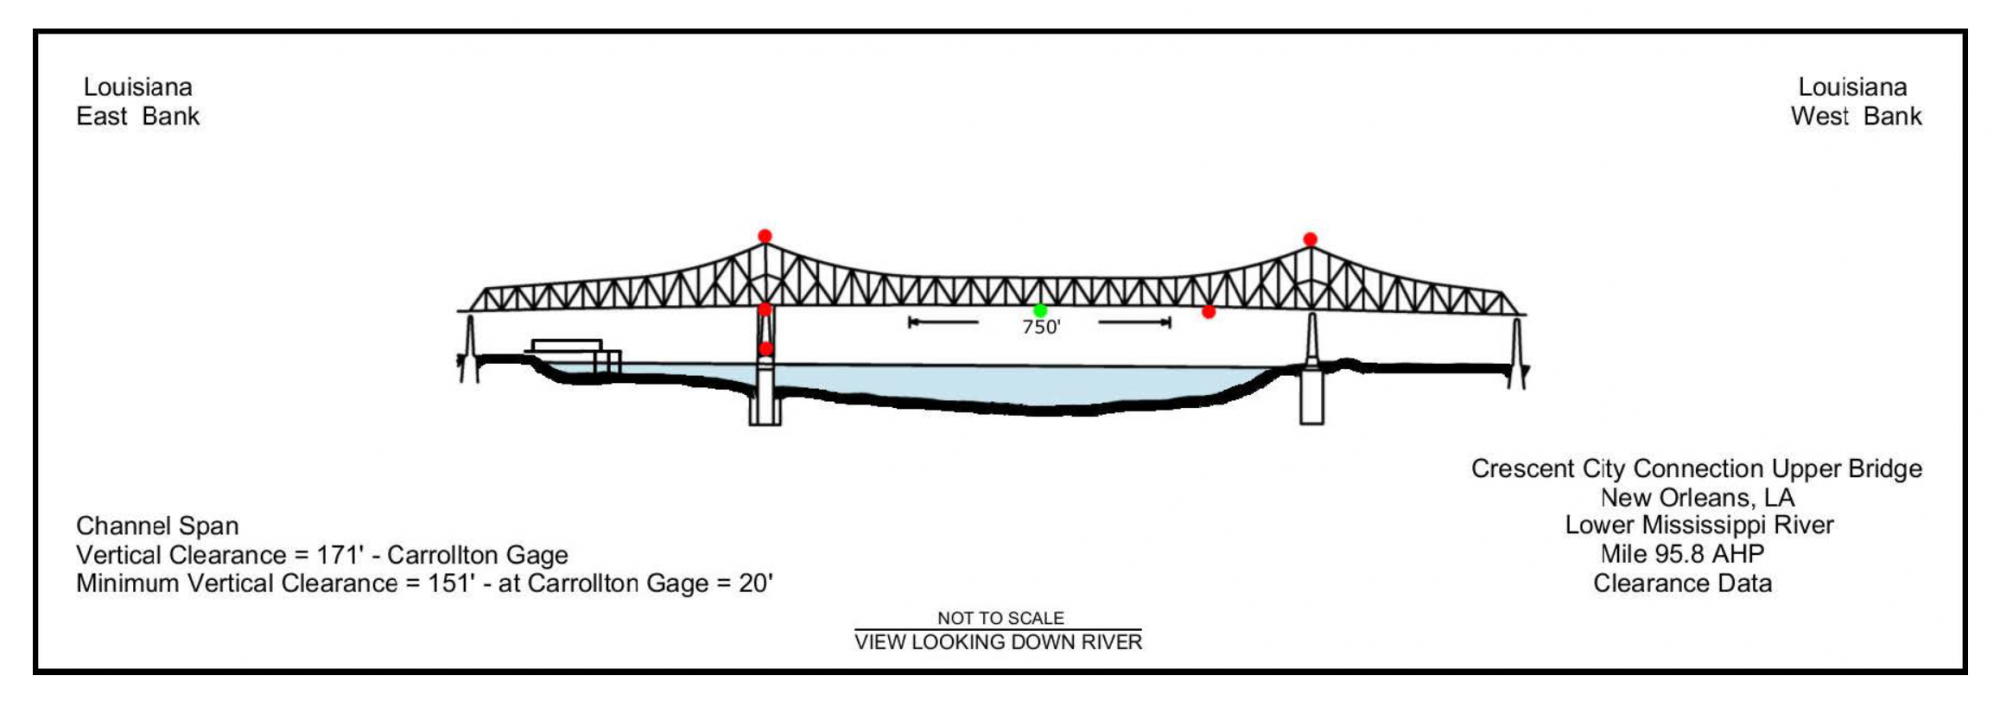 Crescent City Con. Upper Bridge Clearances | Bridge Calculator LLC